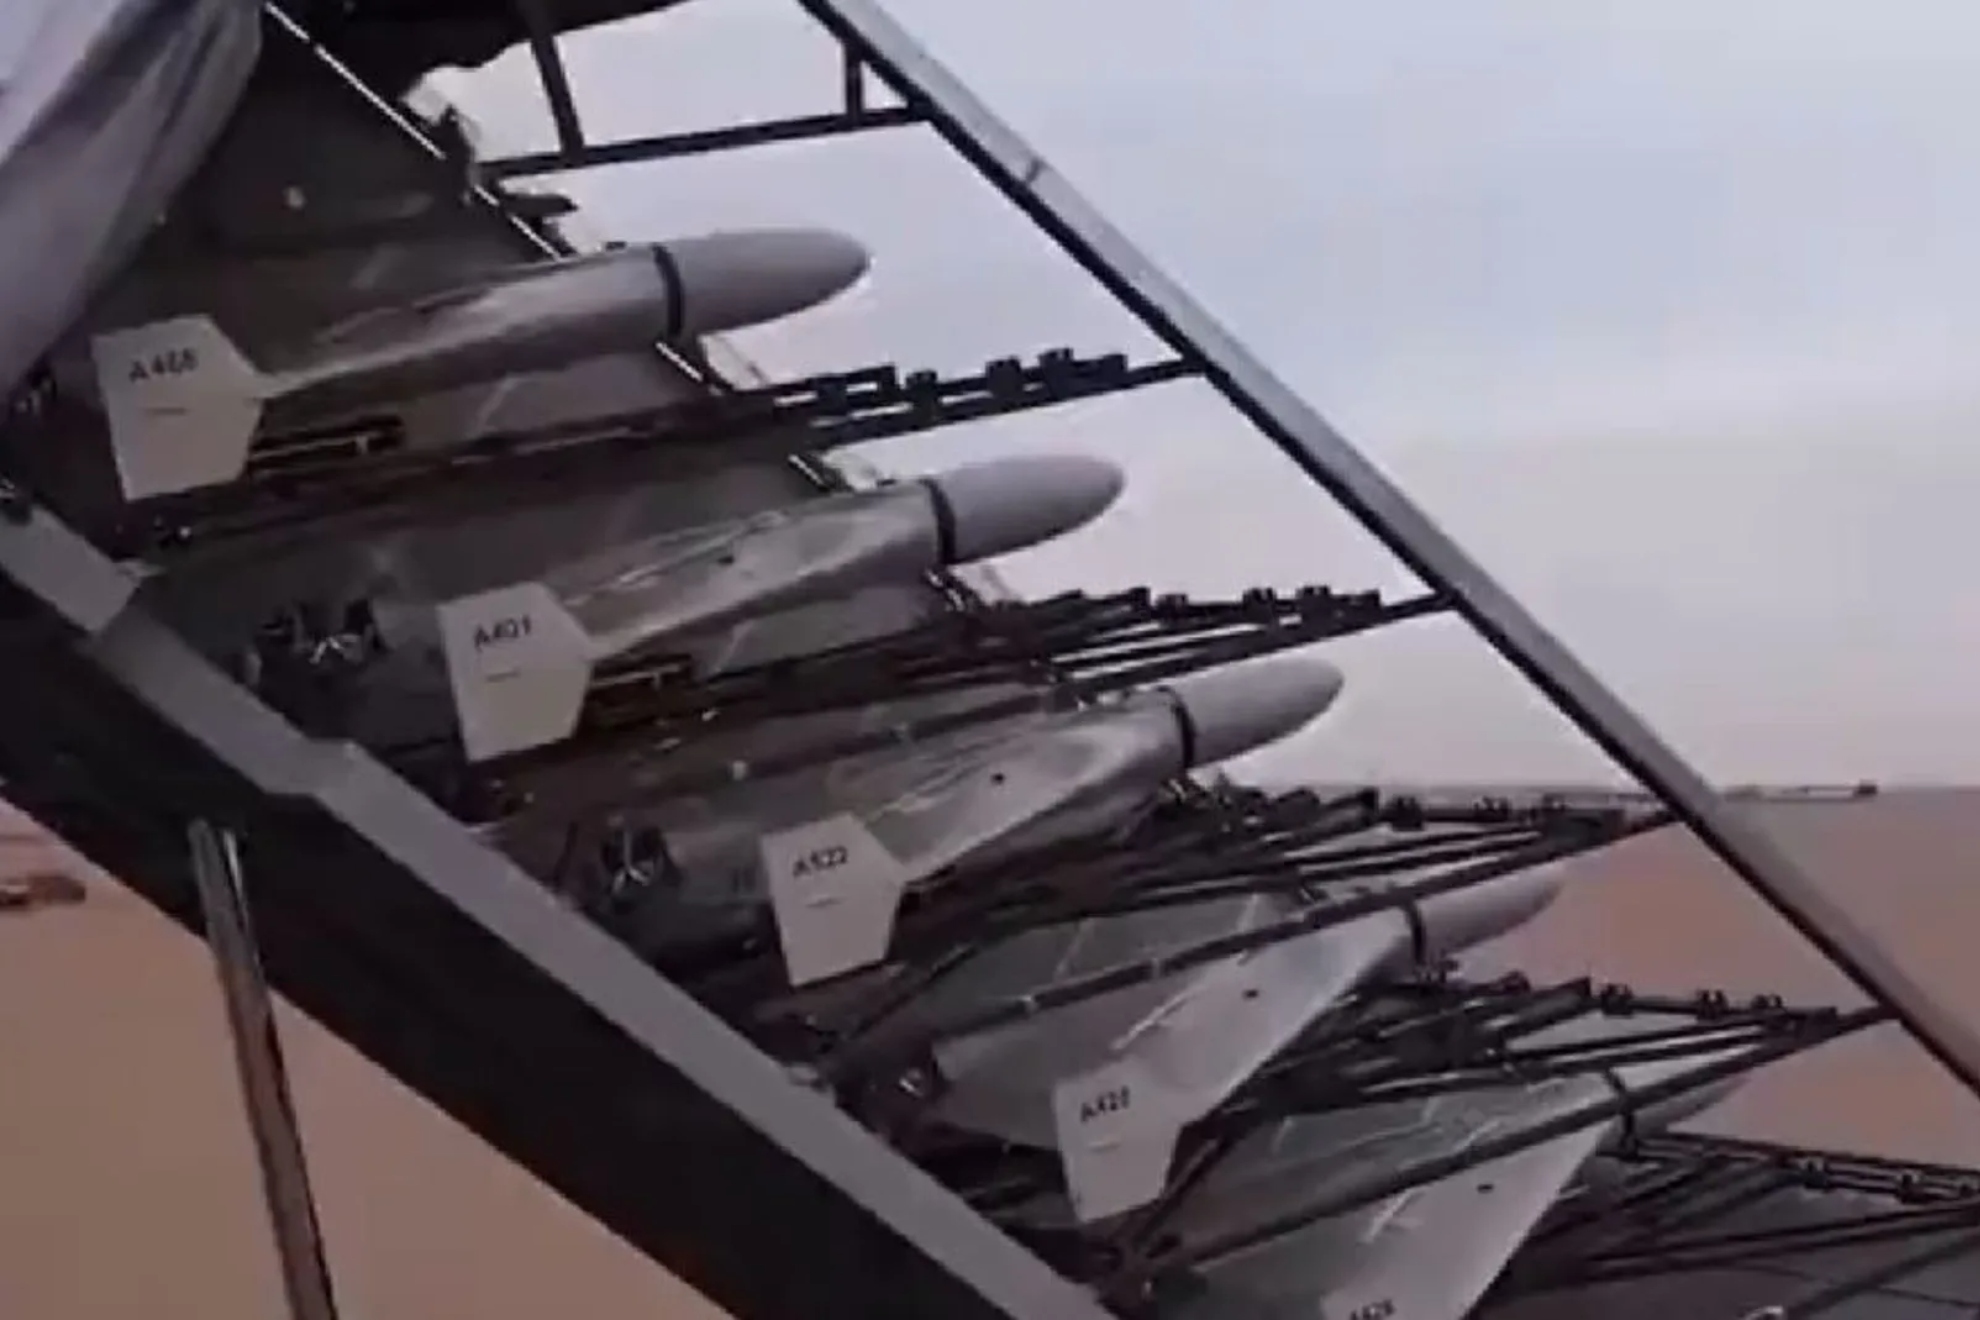 Qu valen los drones usados por Irn para atacar Israel.